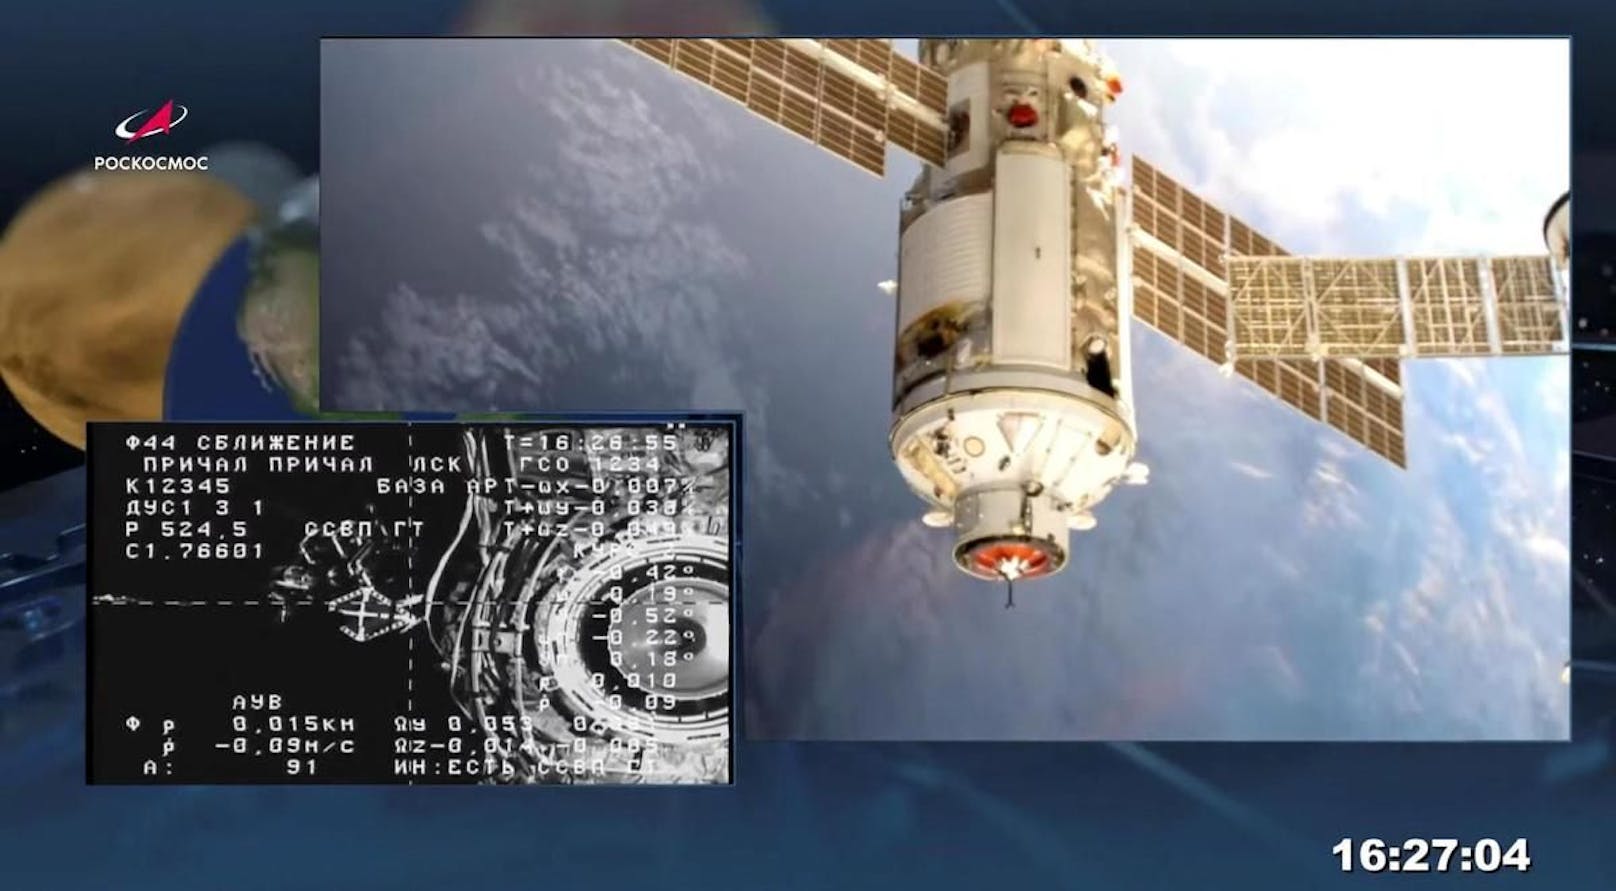 Das Nauka-Modul dockte wie geplant an der ISS an.